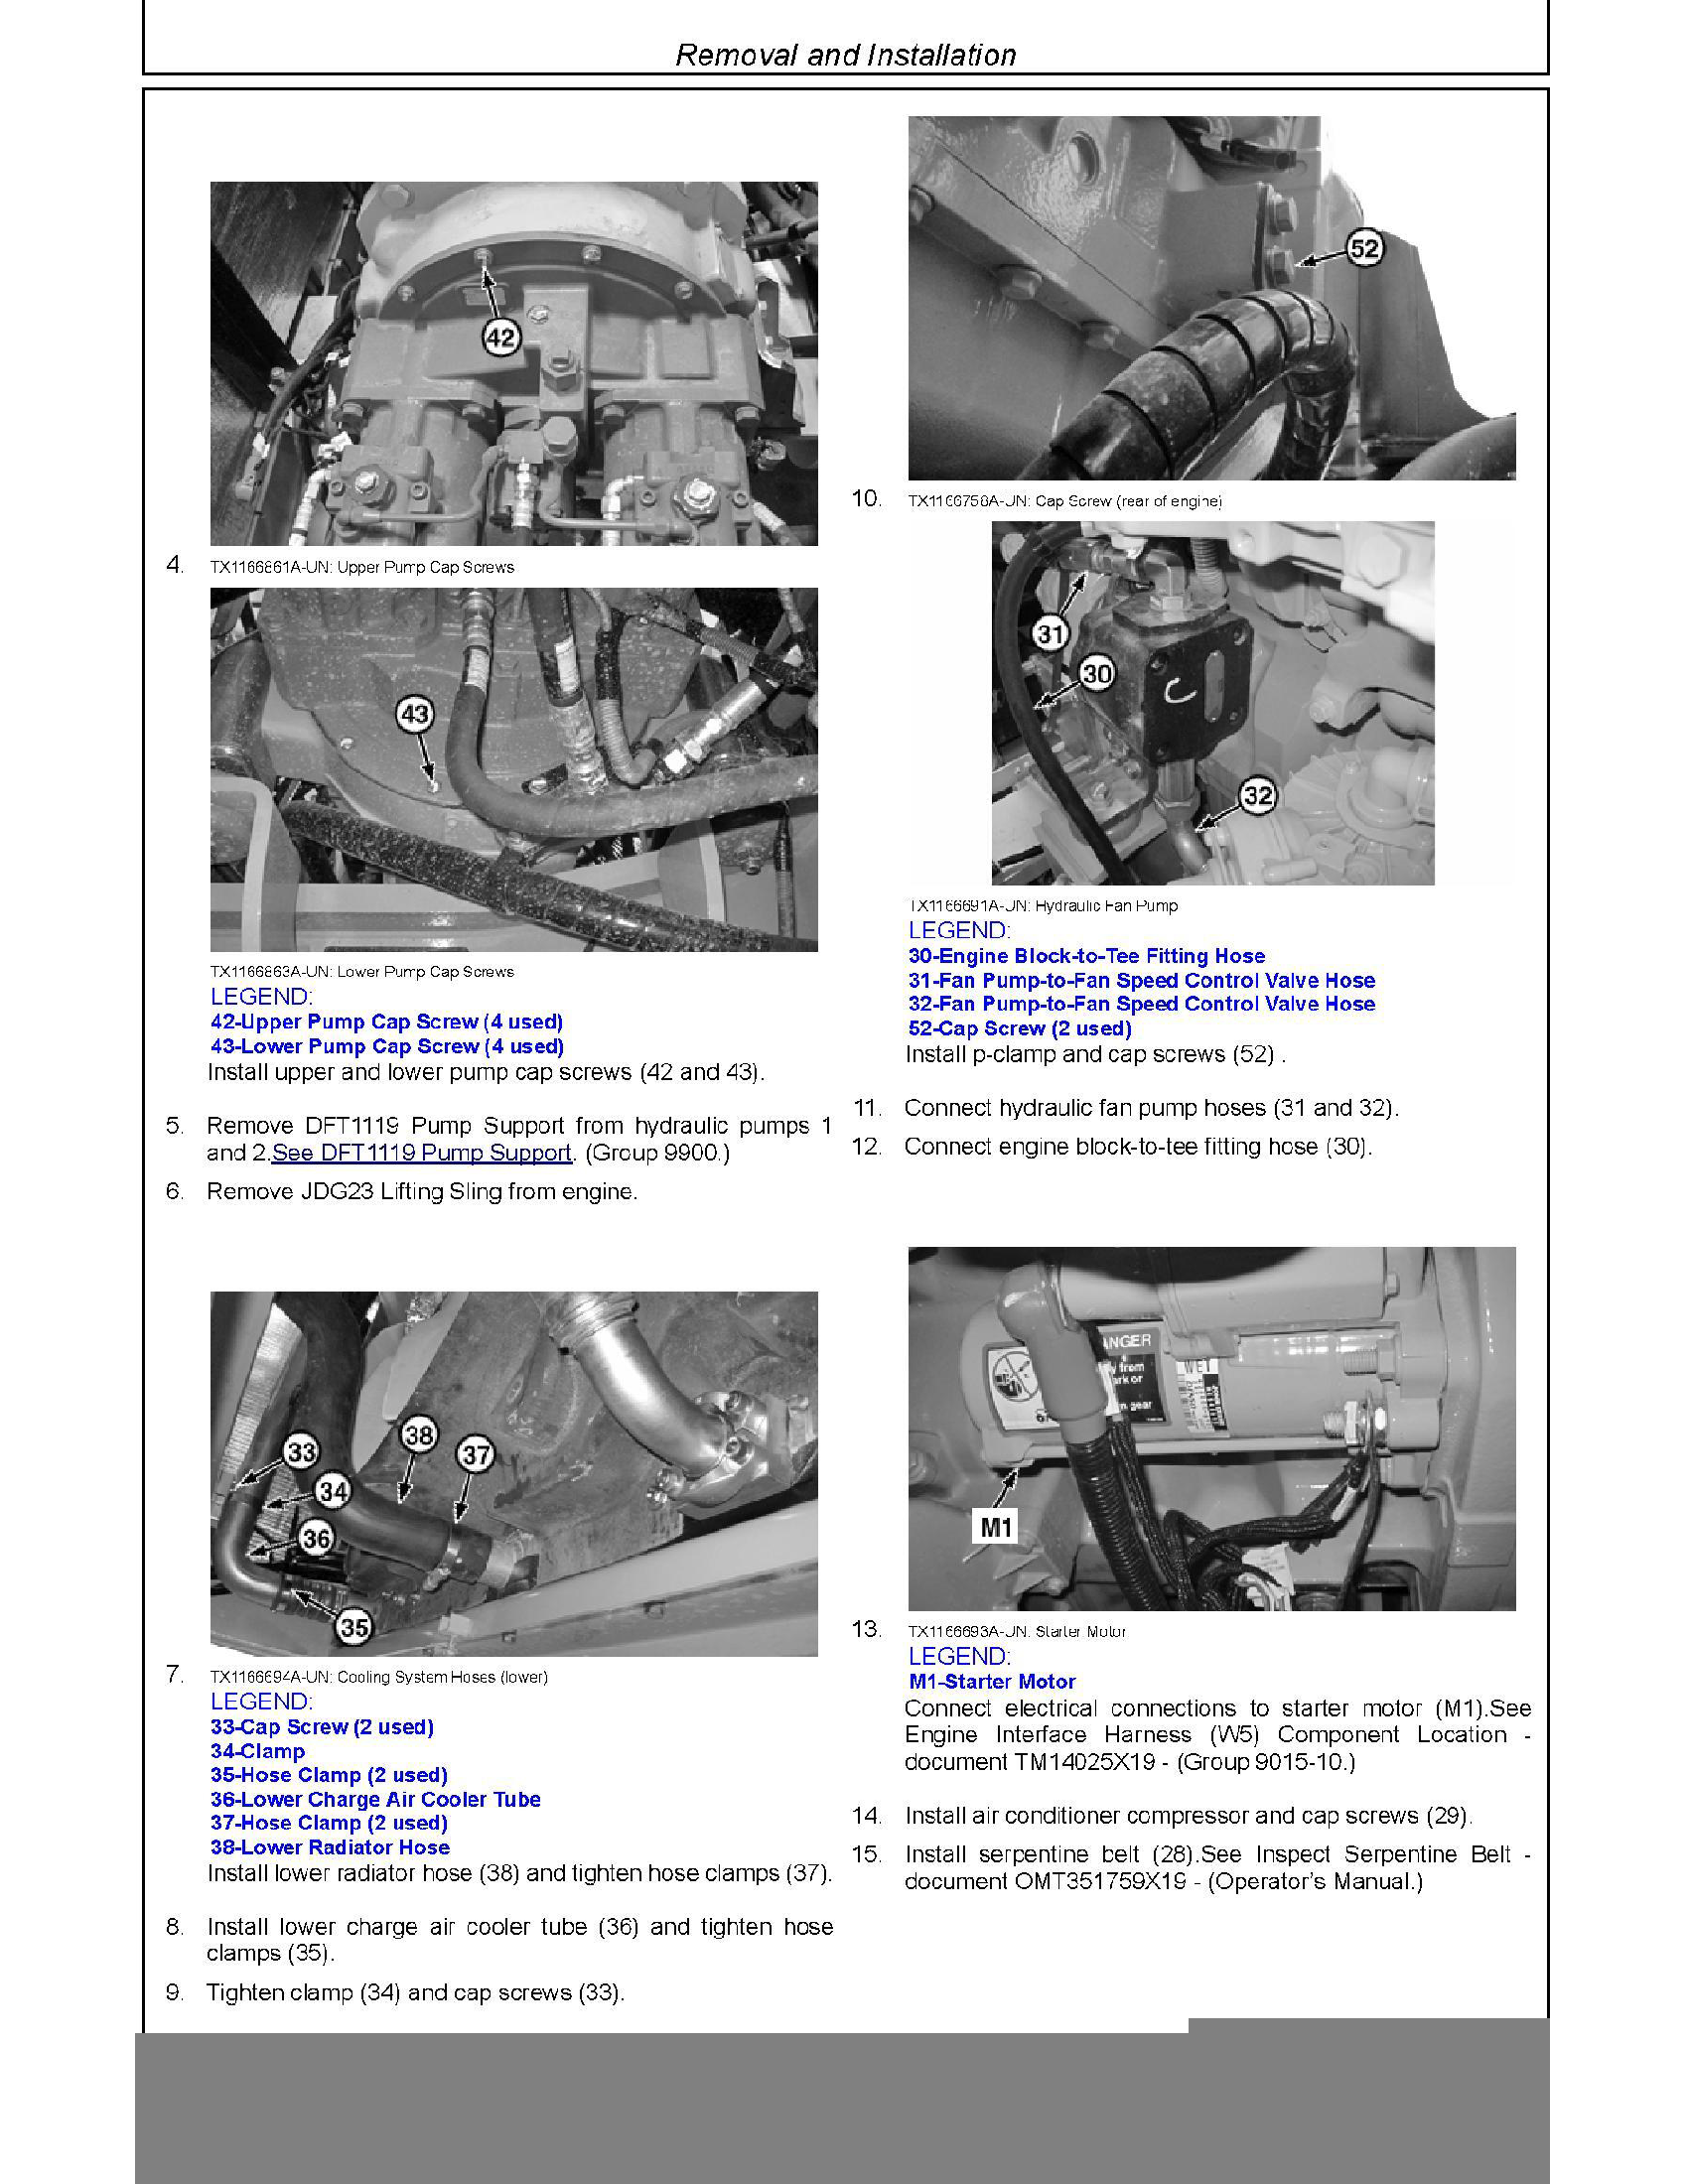 John Deere 744E manual pdf